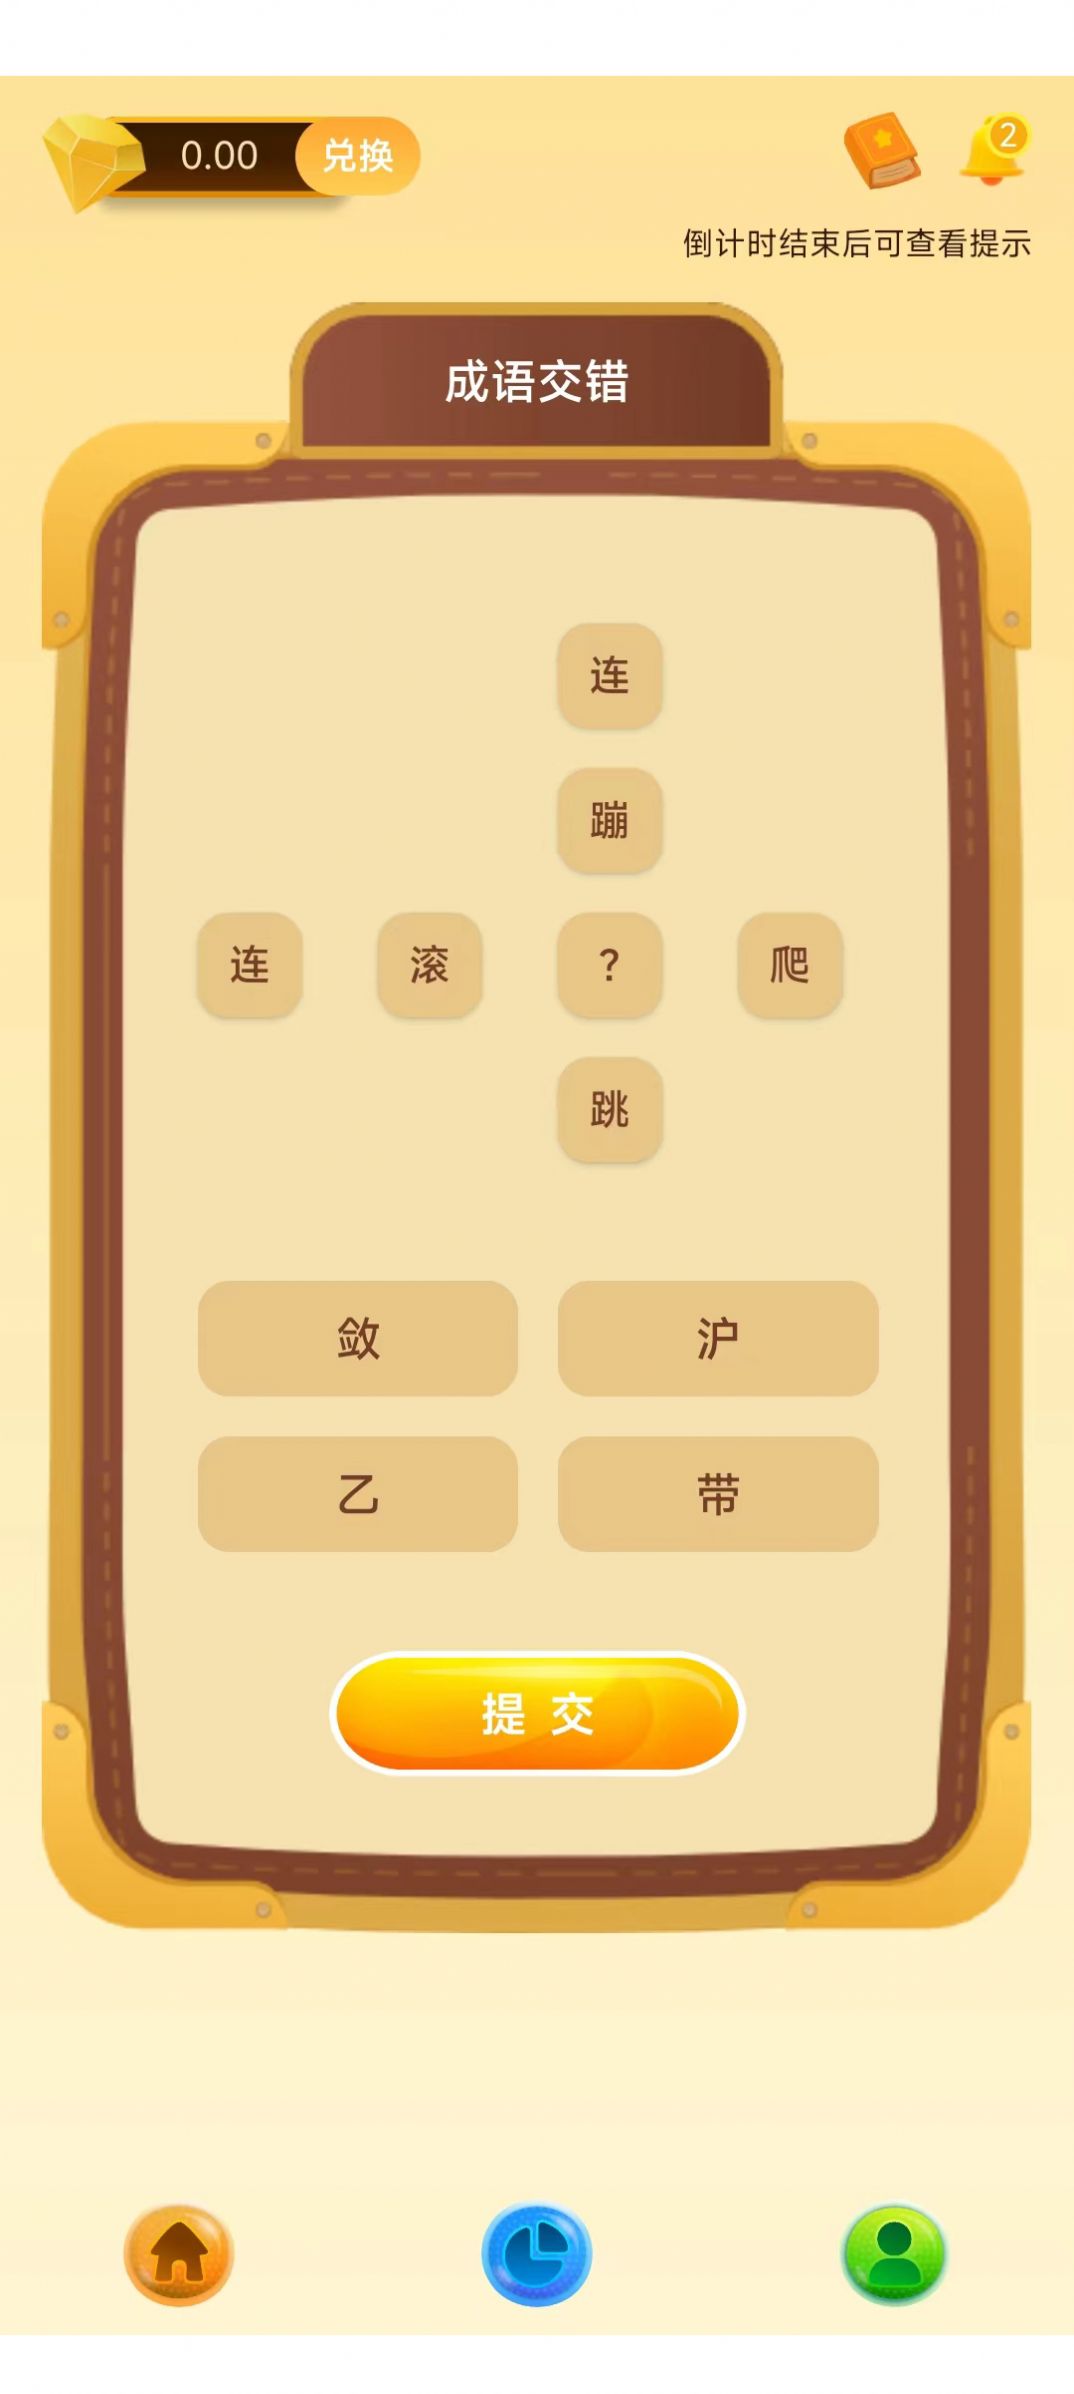 芒果宝盒app官方版图片1